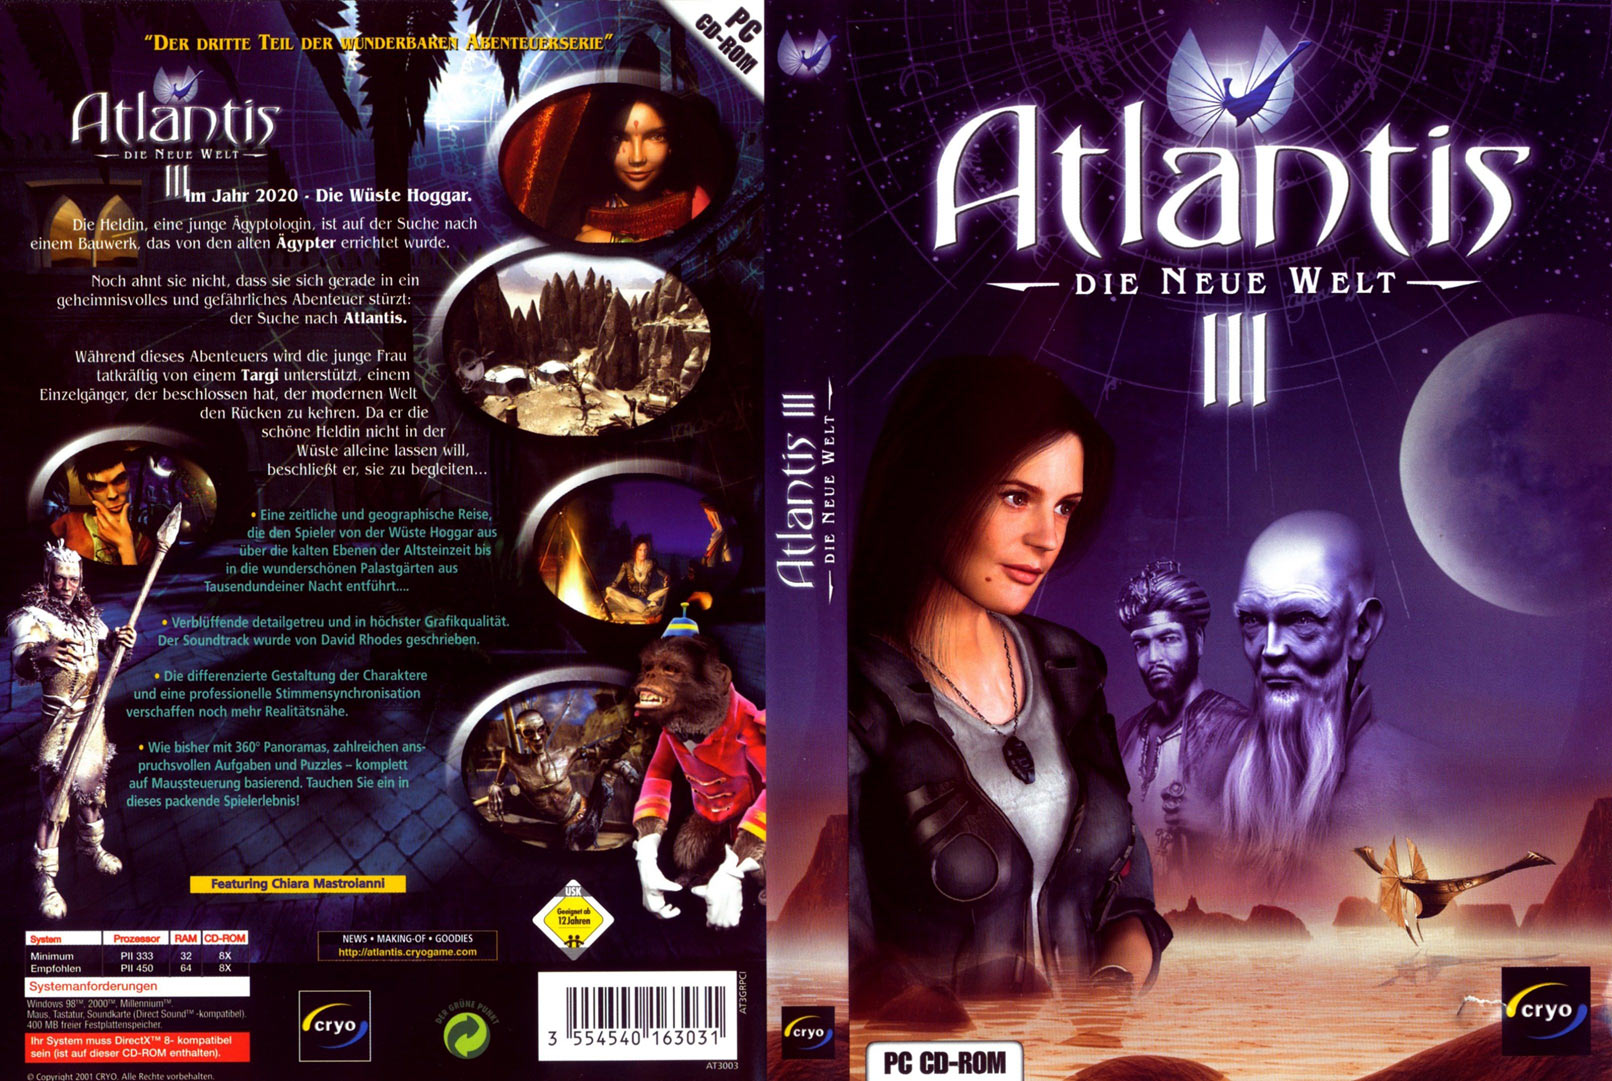 New atlantis. Атлантида 3 игра. Atlantis III: the New World игра. Atlantis 3 ps2.